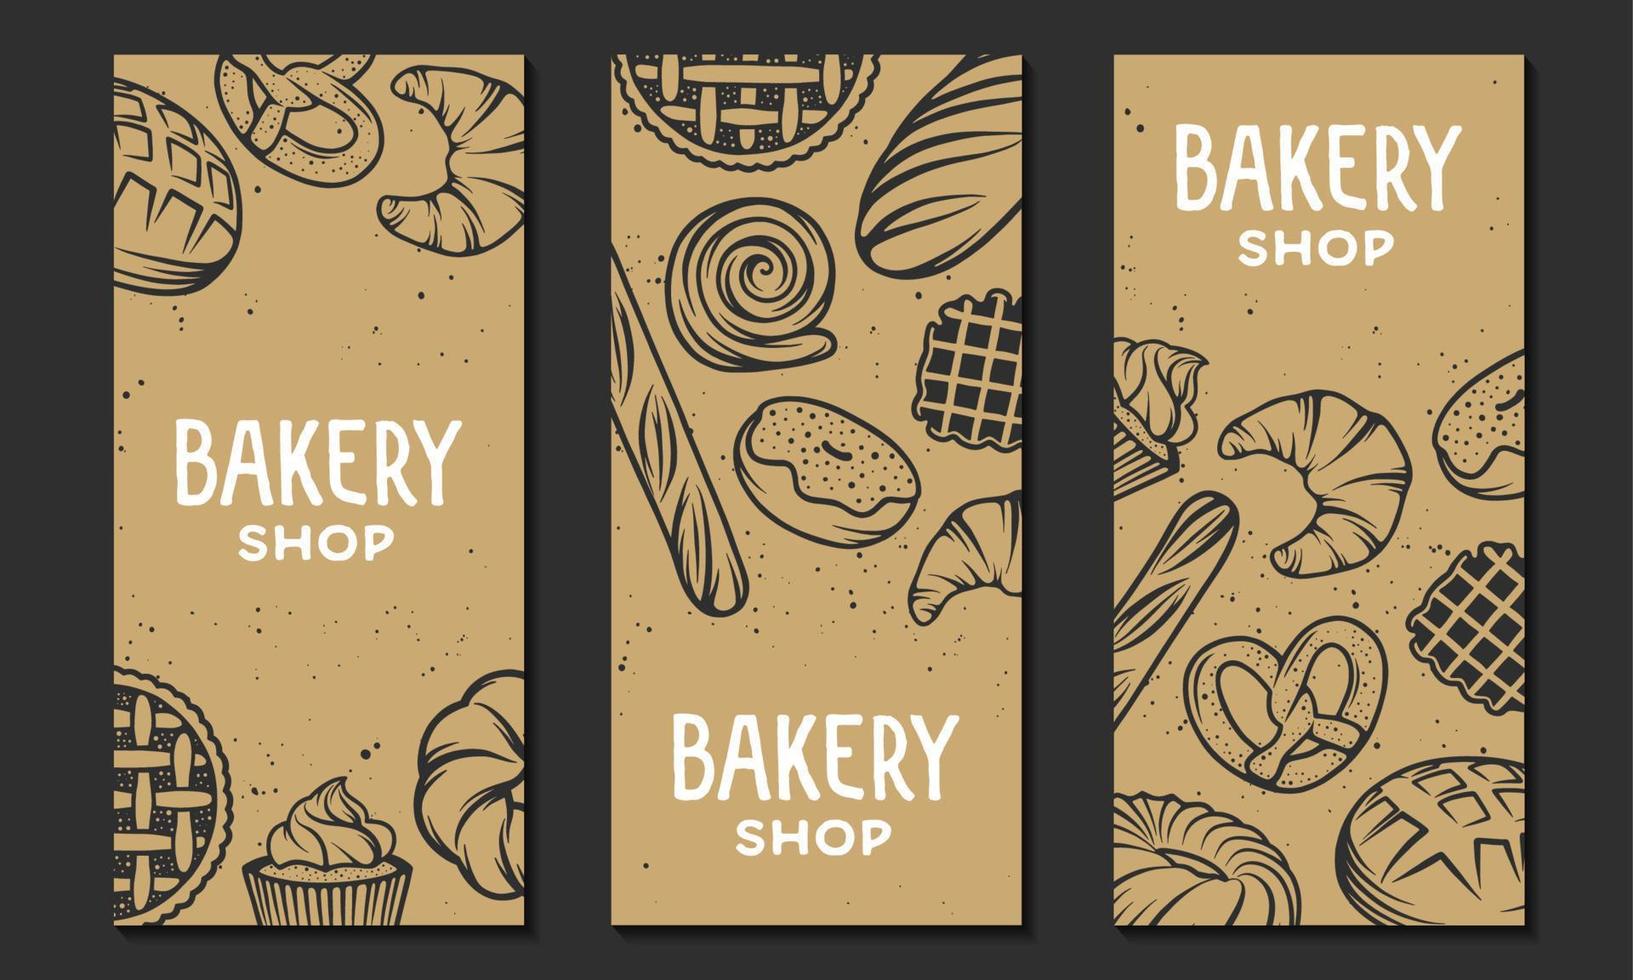 reeks van vector bakkerij gegraveerde elementen. typografie ontwerp met brood, gebakje, taart, broodjes, snoepgoed, koekje. verzameling van modern lineair grafisch ontwerp verticaal banier sjabloon. bakkerij winkel.